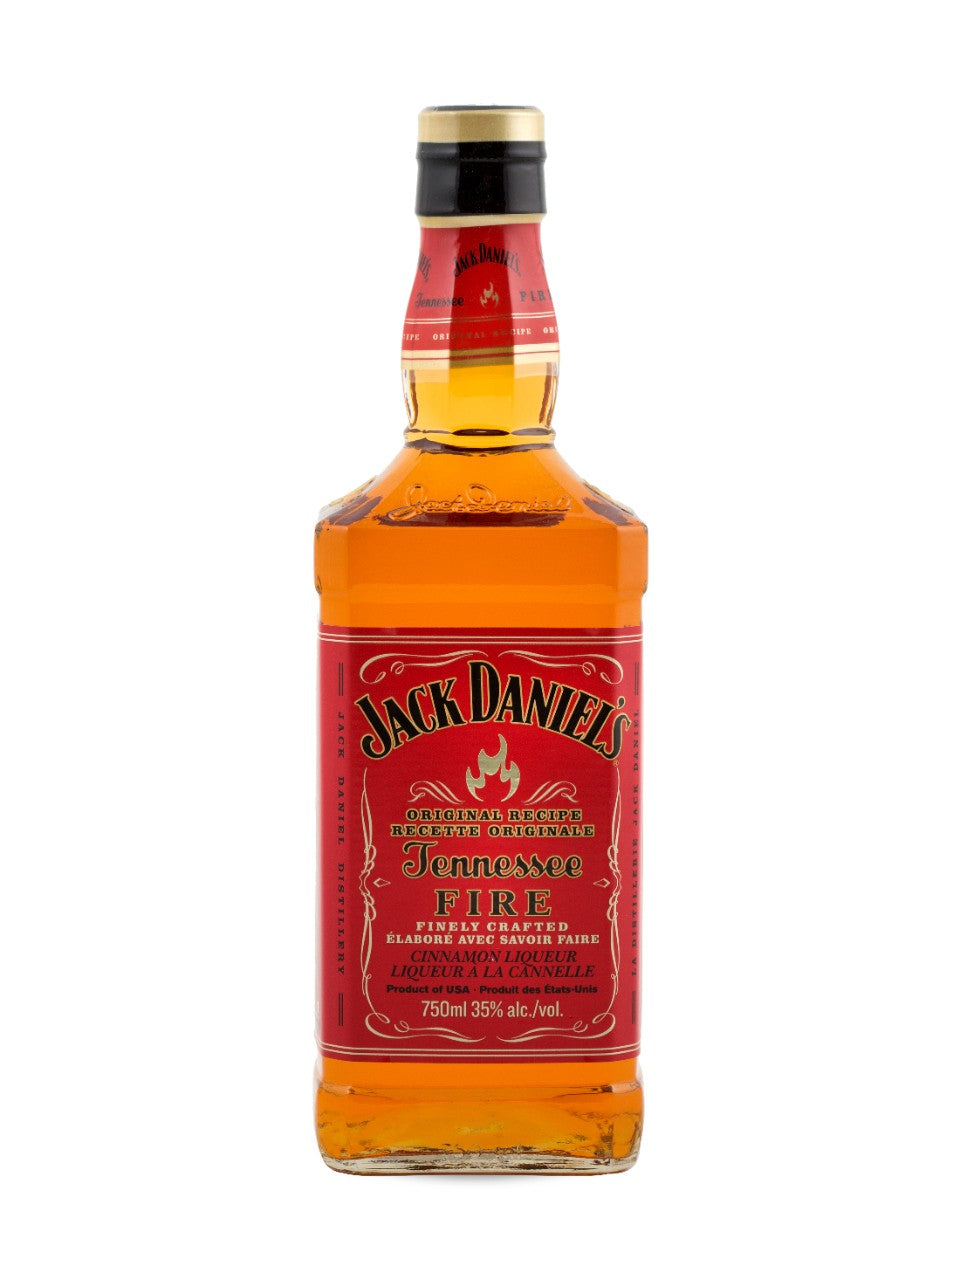 Jack Daniel's Tennessee Fire 750 ml bottle